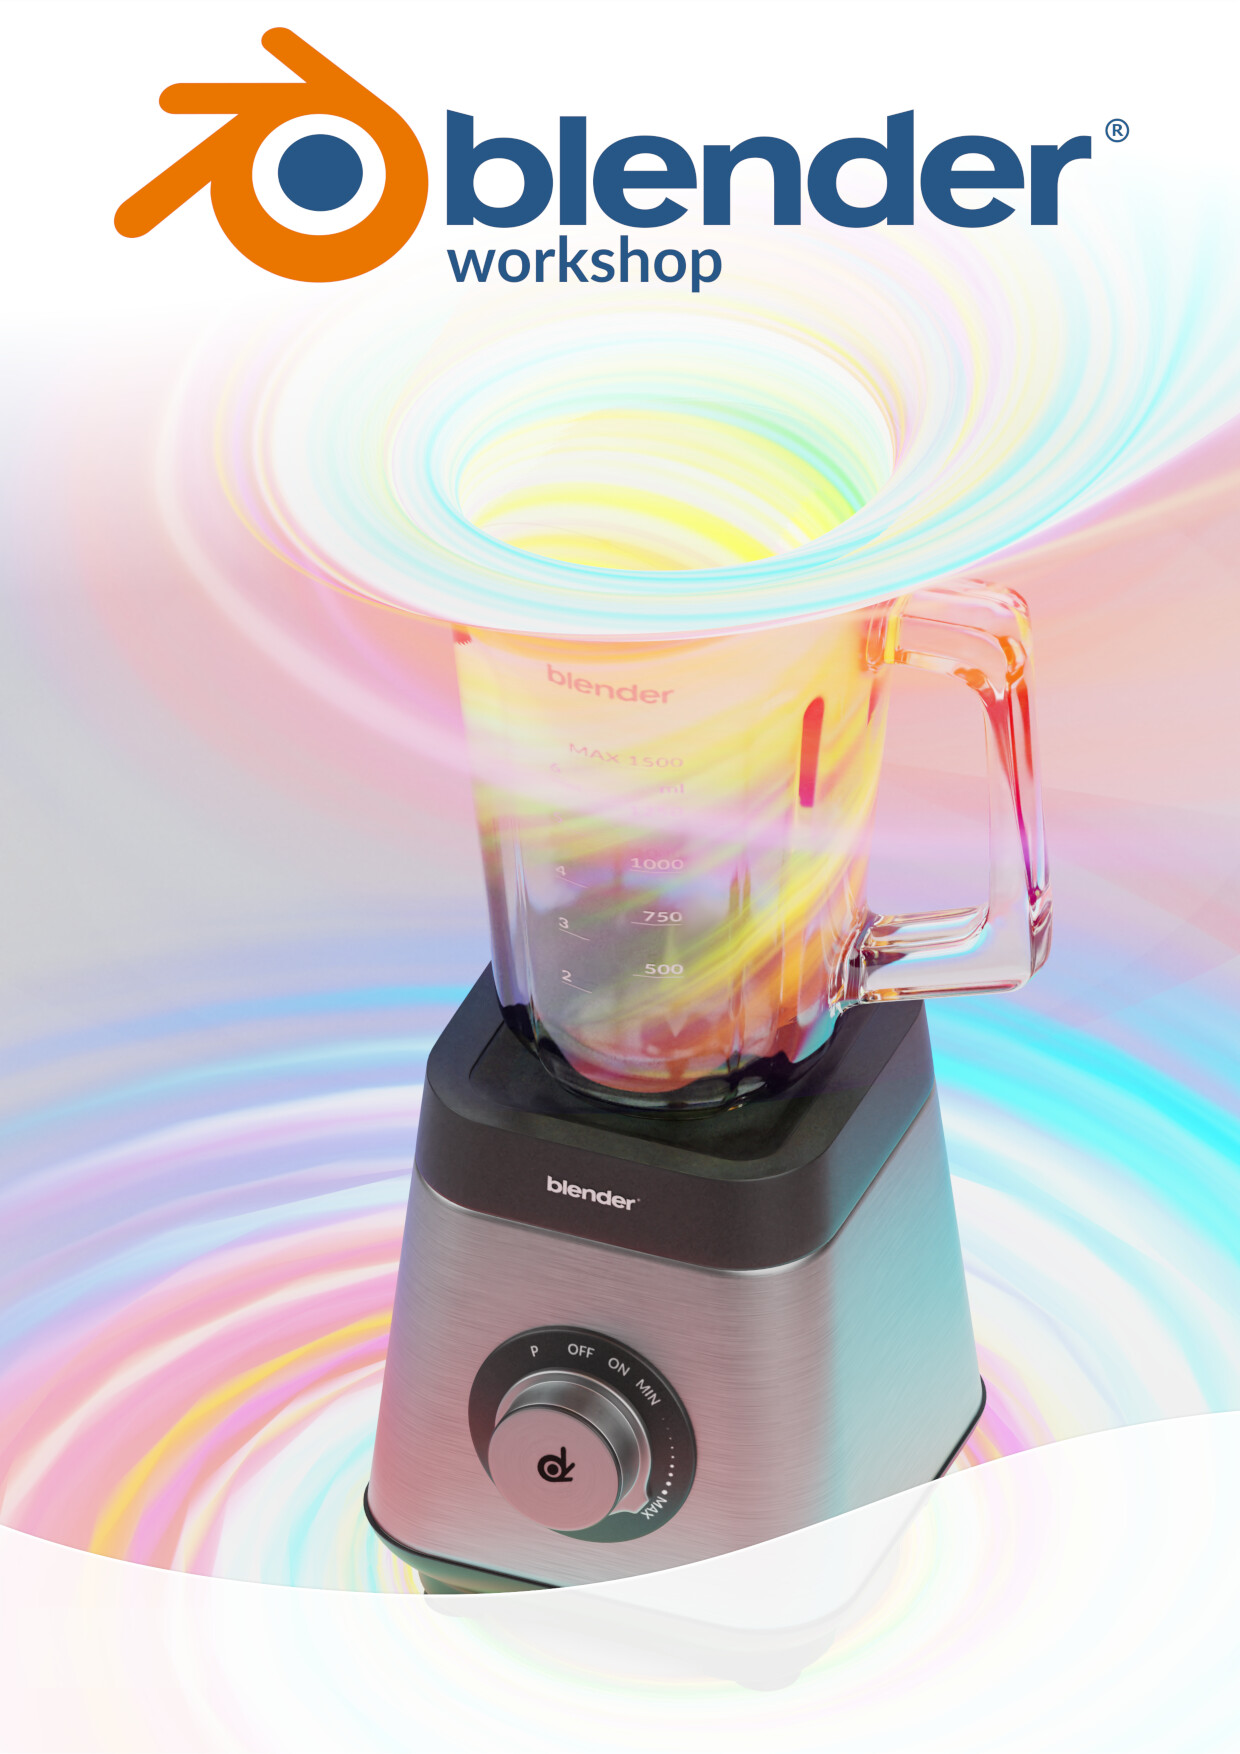 ArtStation - workshop blender/mixer